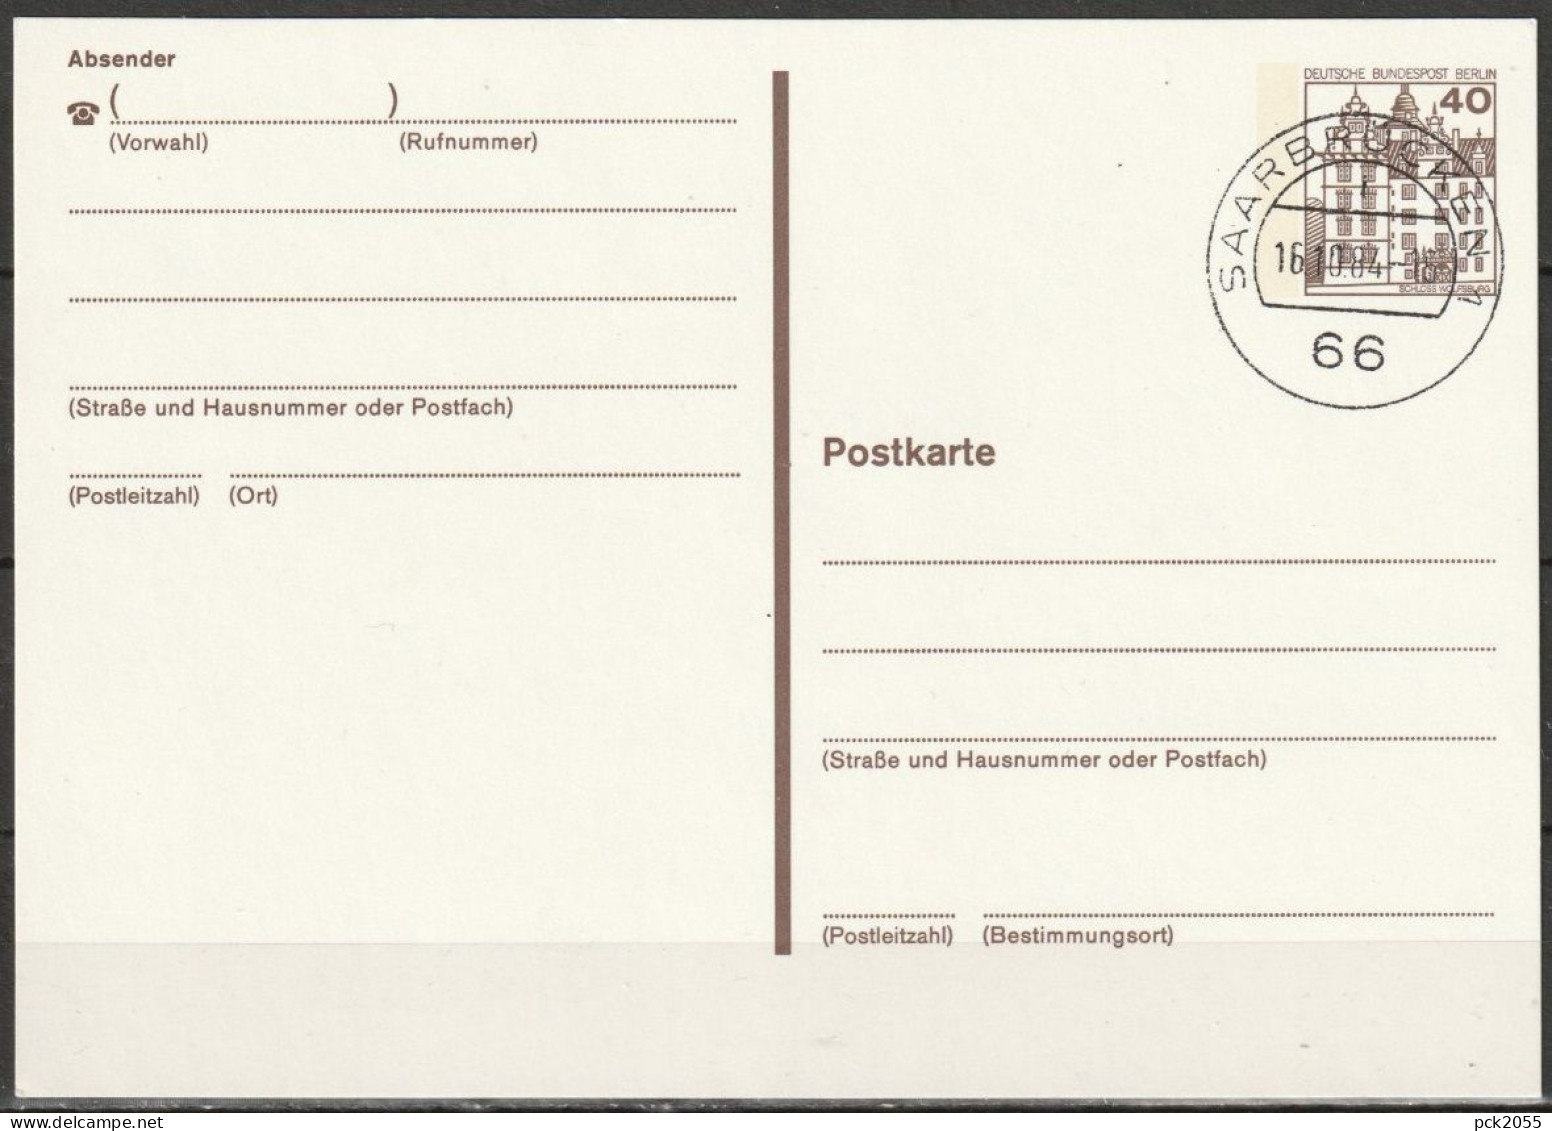 Berlin Ganzsache 1984 Mi.-Nr. P121 II Tagesstempel Saarbrücken   16.10.84  ( PK 600 ) - Postcards - Used